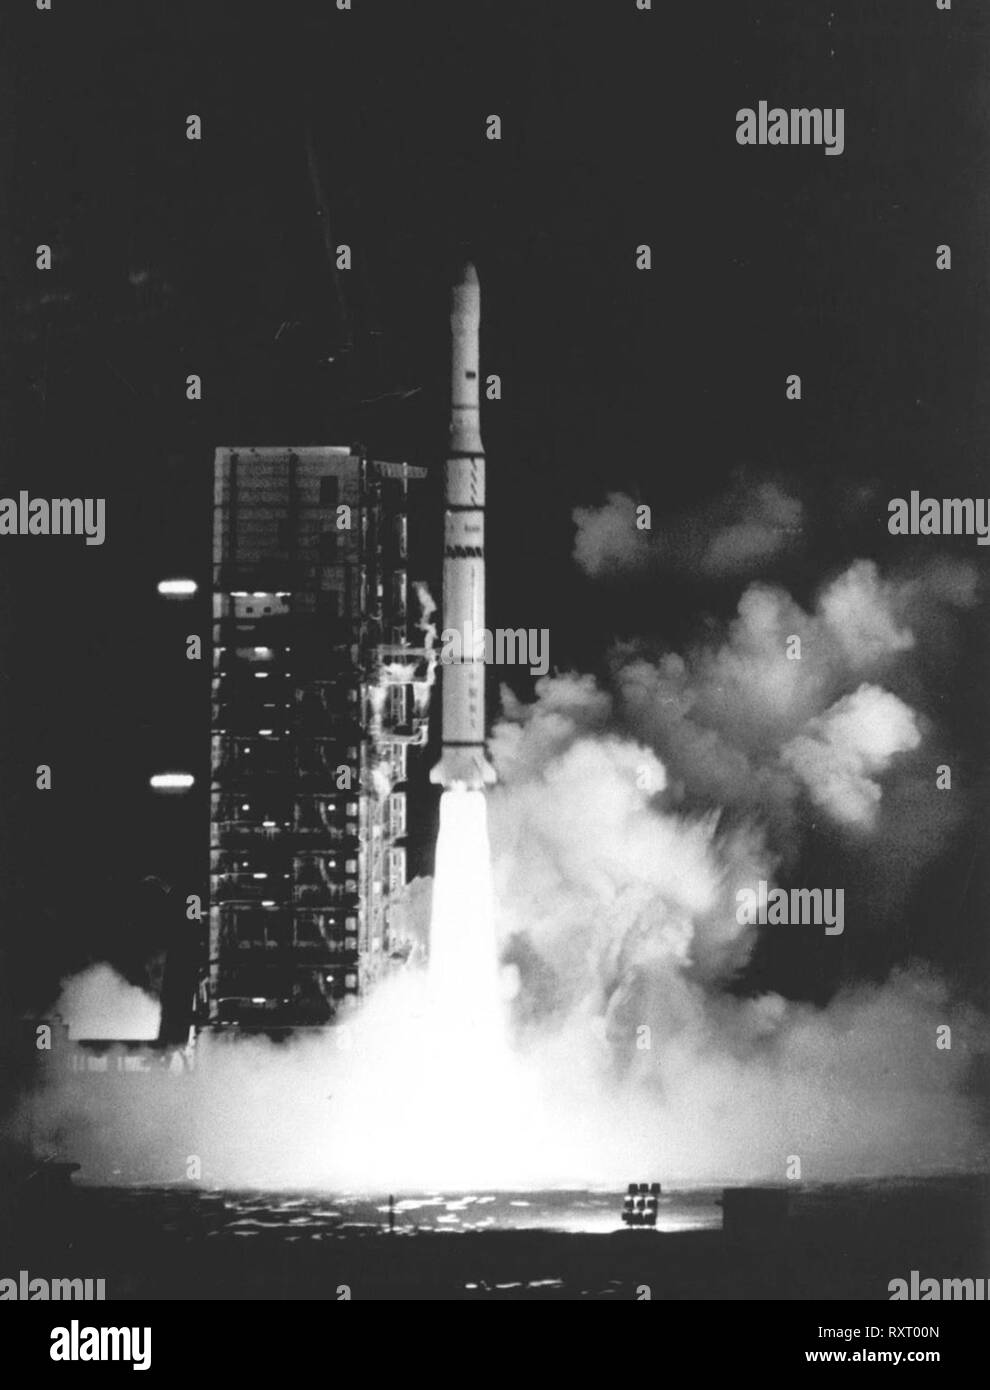 Peking, China. 11 Mär, 2019. Die Asiasat 1 Telekommunikation Satelliten, getragen von einem chinesischen Trägerrakete Langer Marsch 3, Knalle weg vom Xichang Xichang Satellite Launch Center im Südwesten Chinas Provinz Sichuan, am 7. April 1990. Mit einem langen Marsch-3B Rakete, eine neue Mitteilung Satelliten in den Orbit am 10. März 2019, Chinas langer Marsch Trägerrakete startet Serie 300 abgeschlossen, mit mehr als 500 Satelliten in den Weltraum geschickt seit 1970. Um mit GO: 4 LD-Writethru-China Fokus: Chinas langer Marsch Raketen komplett 300 startet Quelle: Xinhua/Alamy leben Nachrichten Stockfoto